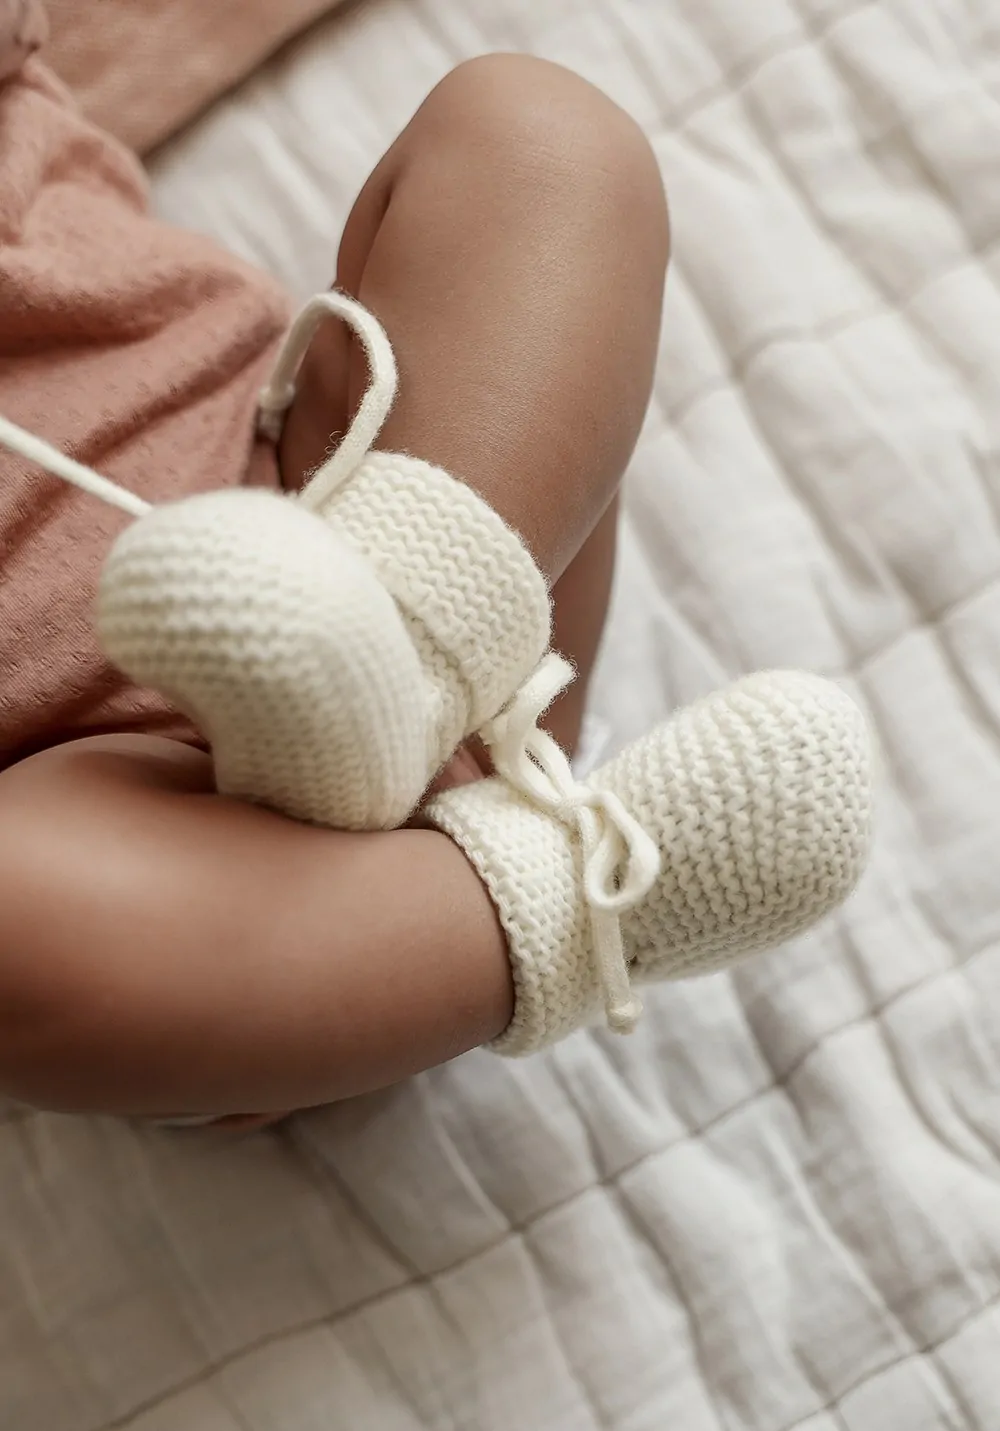 Chaussons bébé naissance blancs façon basket en laine tricotée main